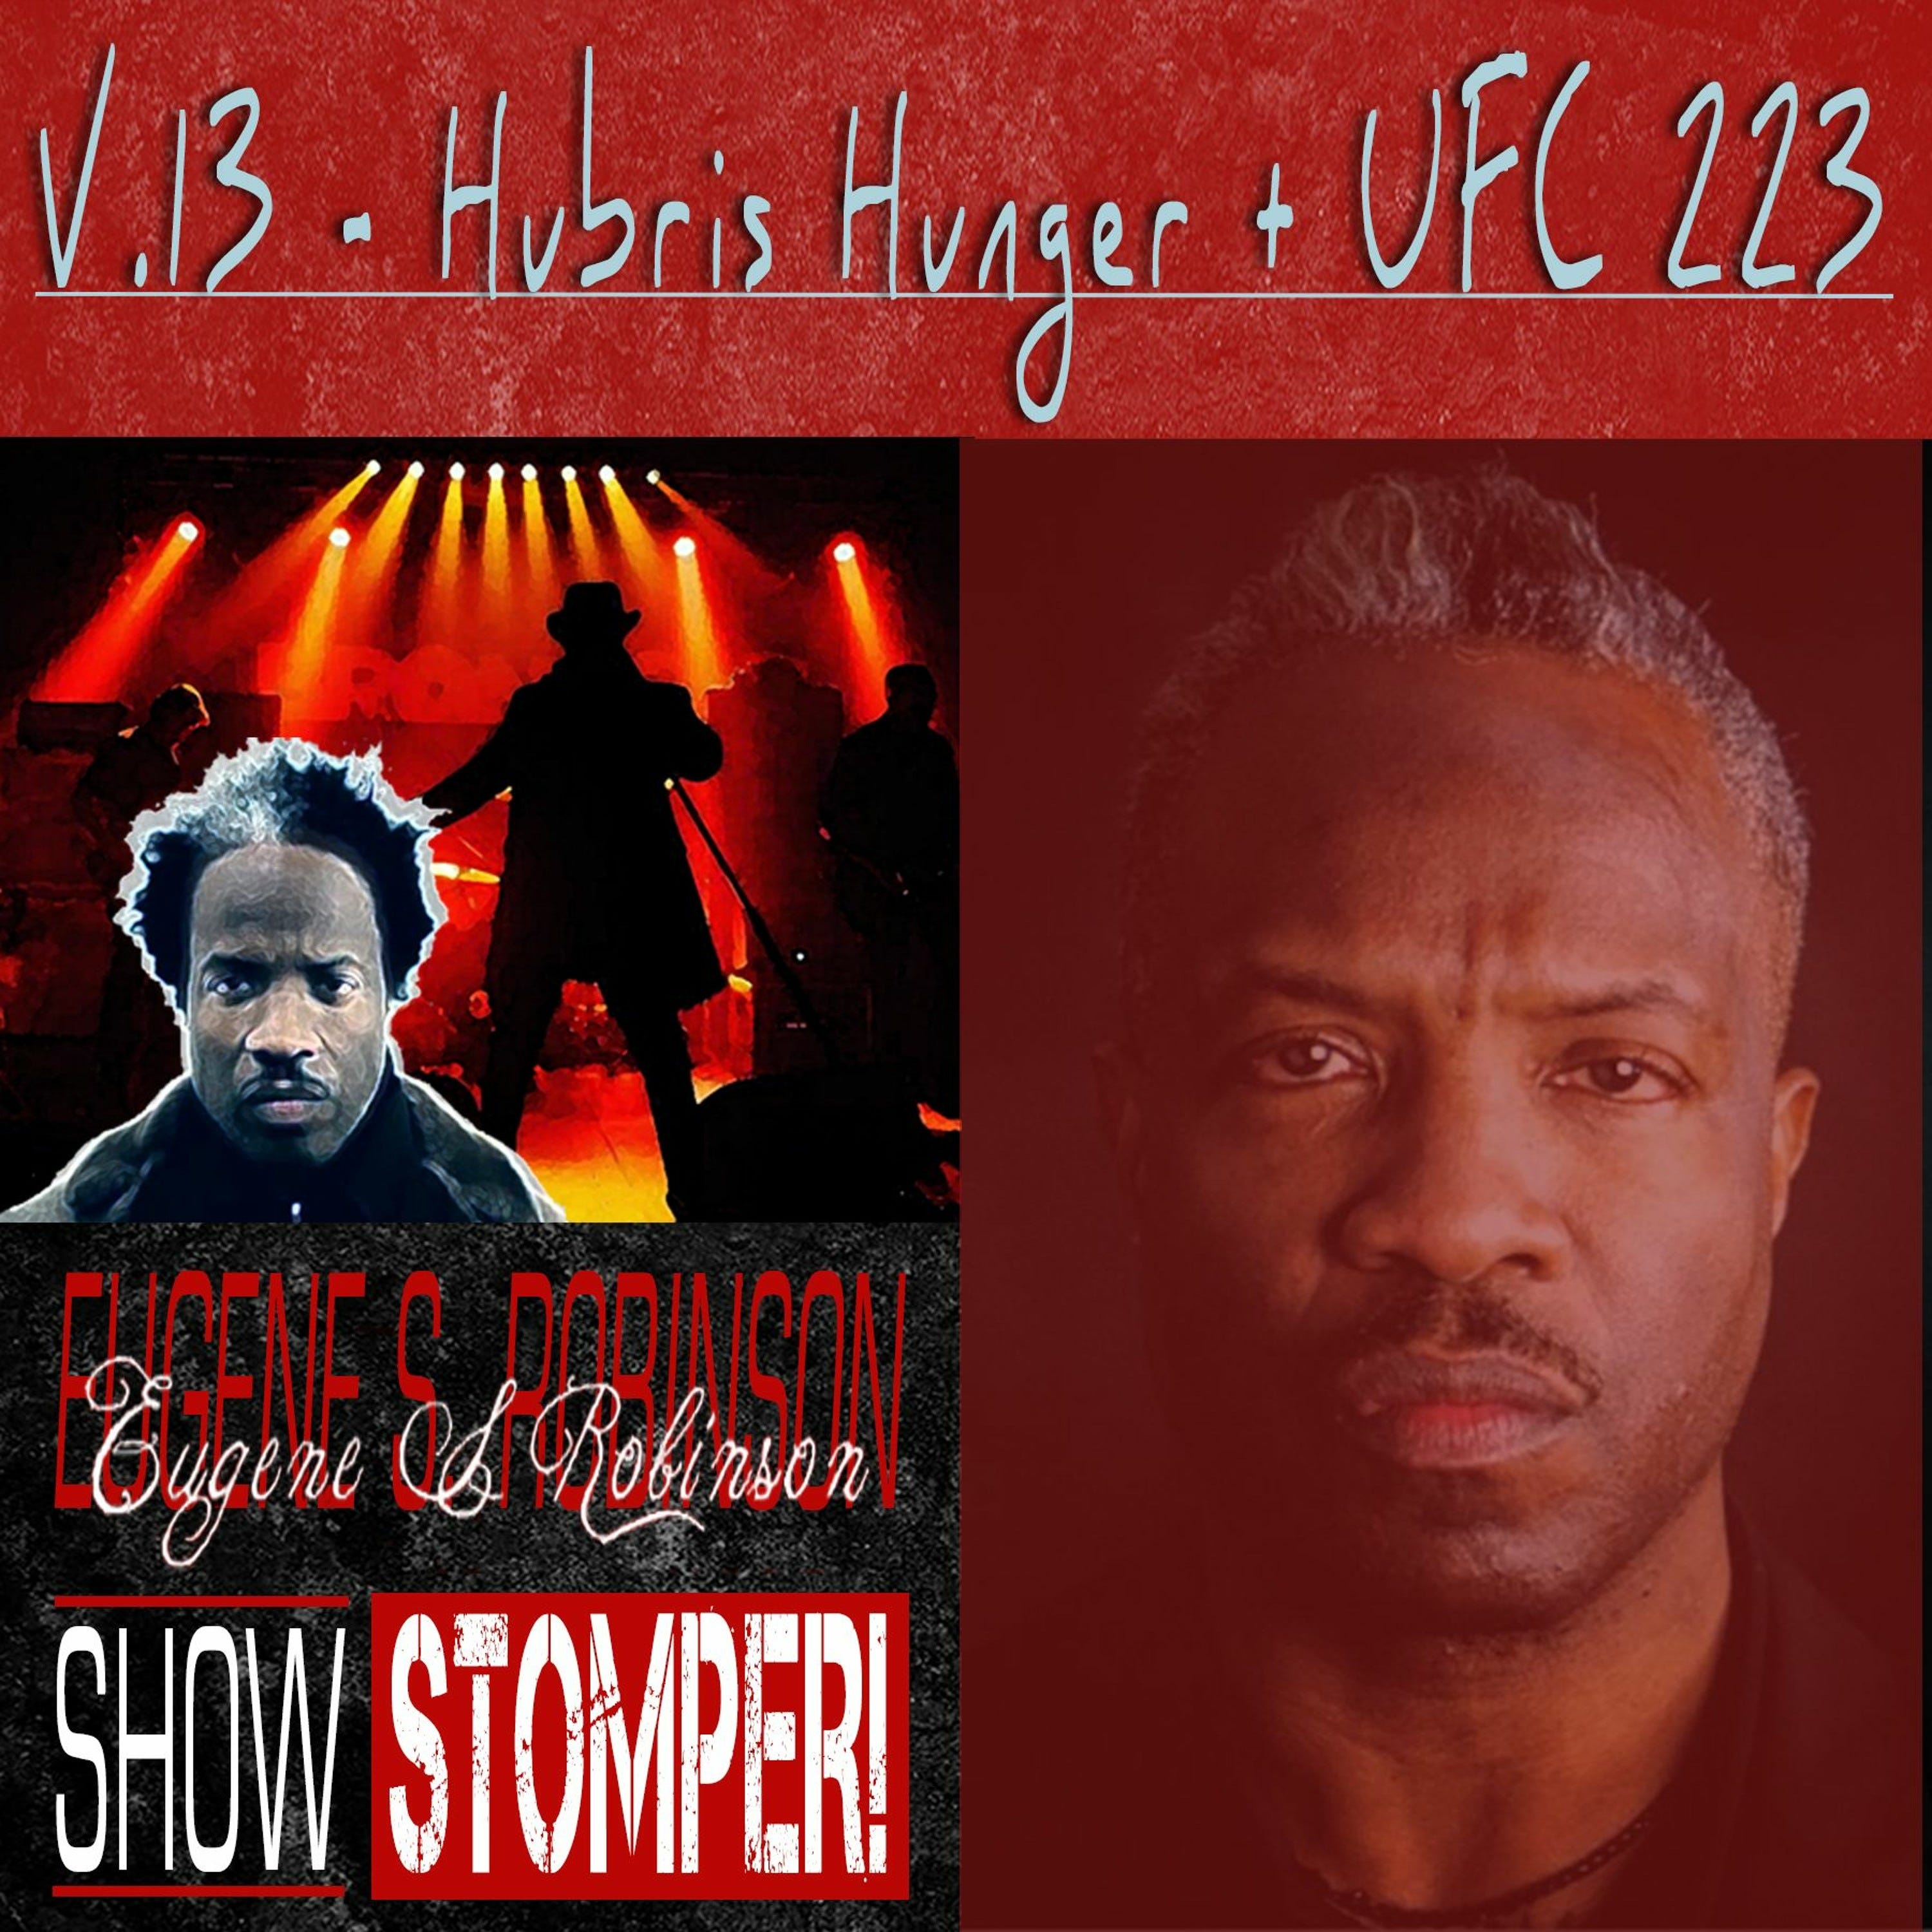 The Eugene S. Robinson Show Stomper! V.13 - Hubris Hunger + UFC 223